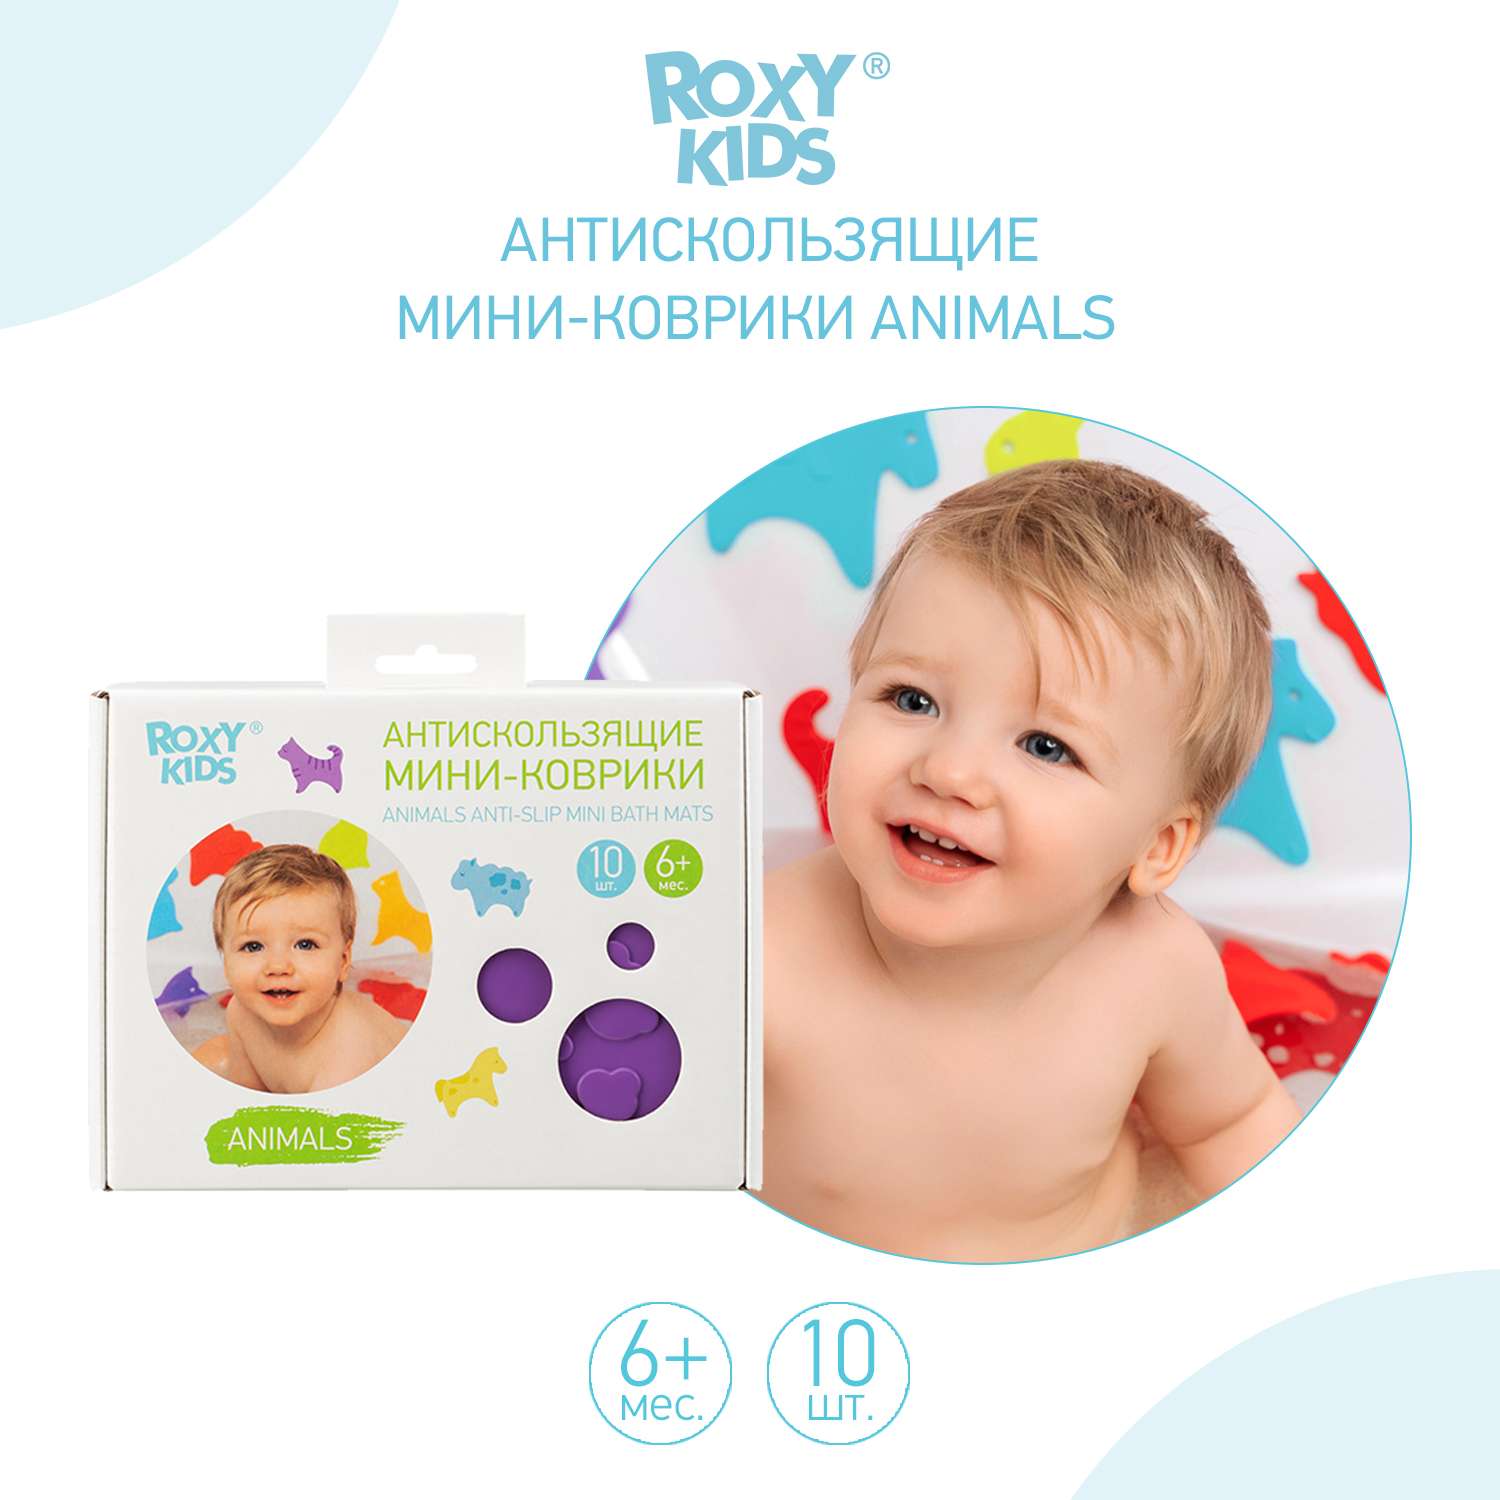 Набор мини-ковриков для ванны ROXY-KIDS Animals антискользящие 10шт RBM-010-CC - фото 5